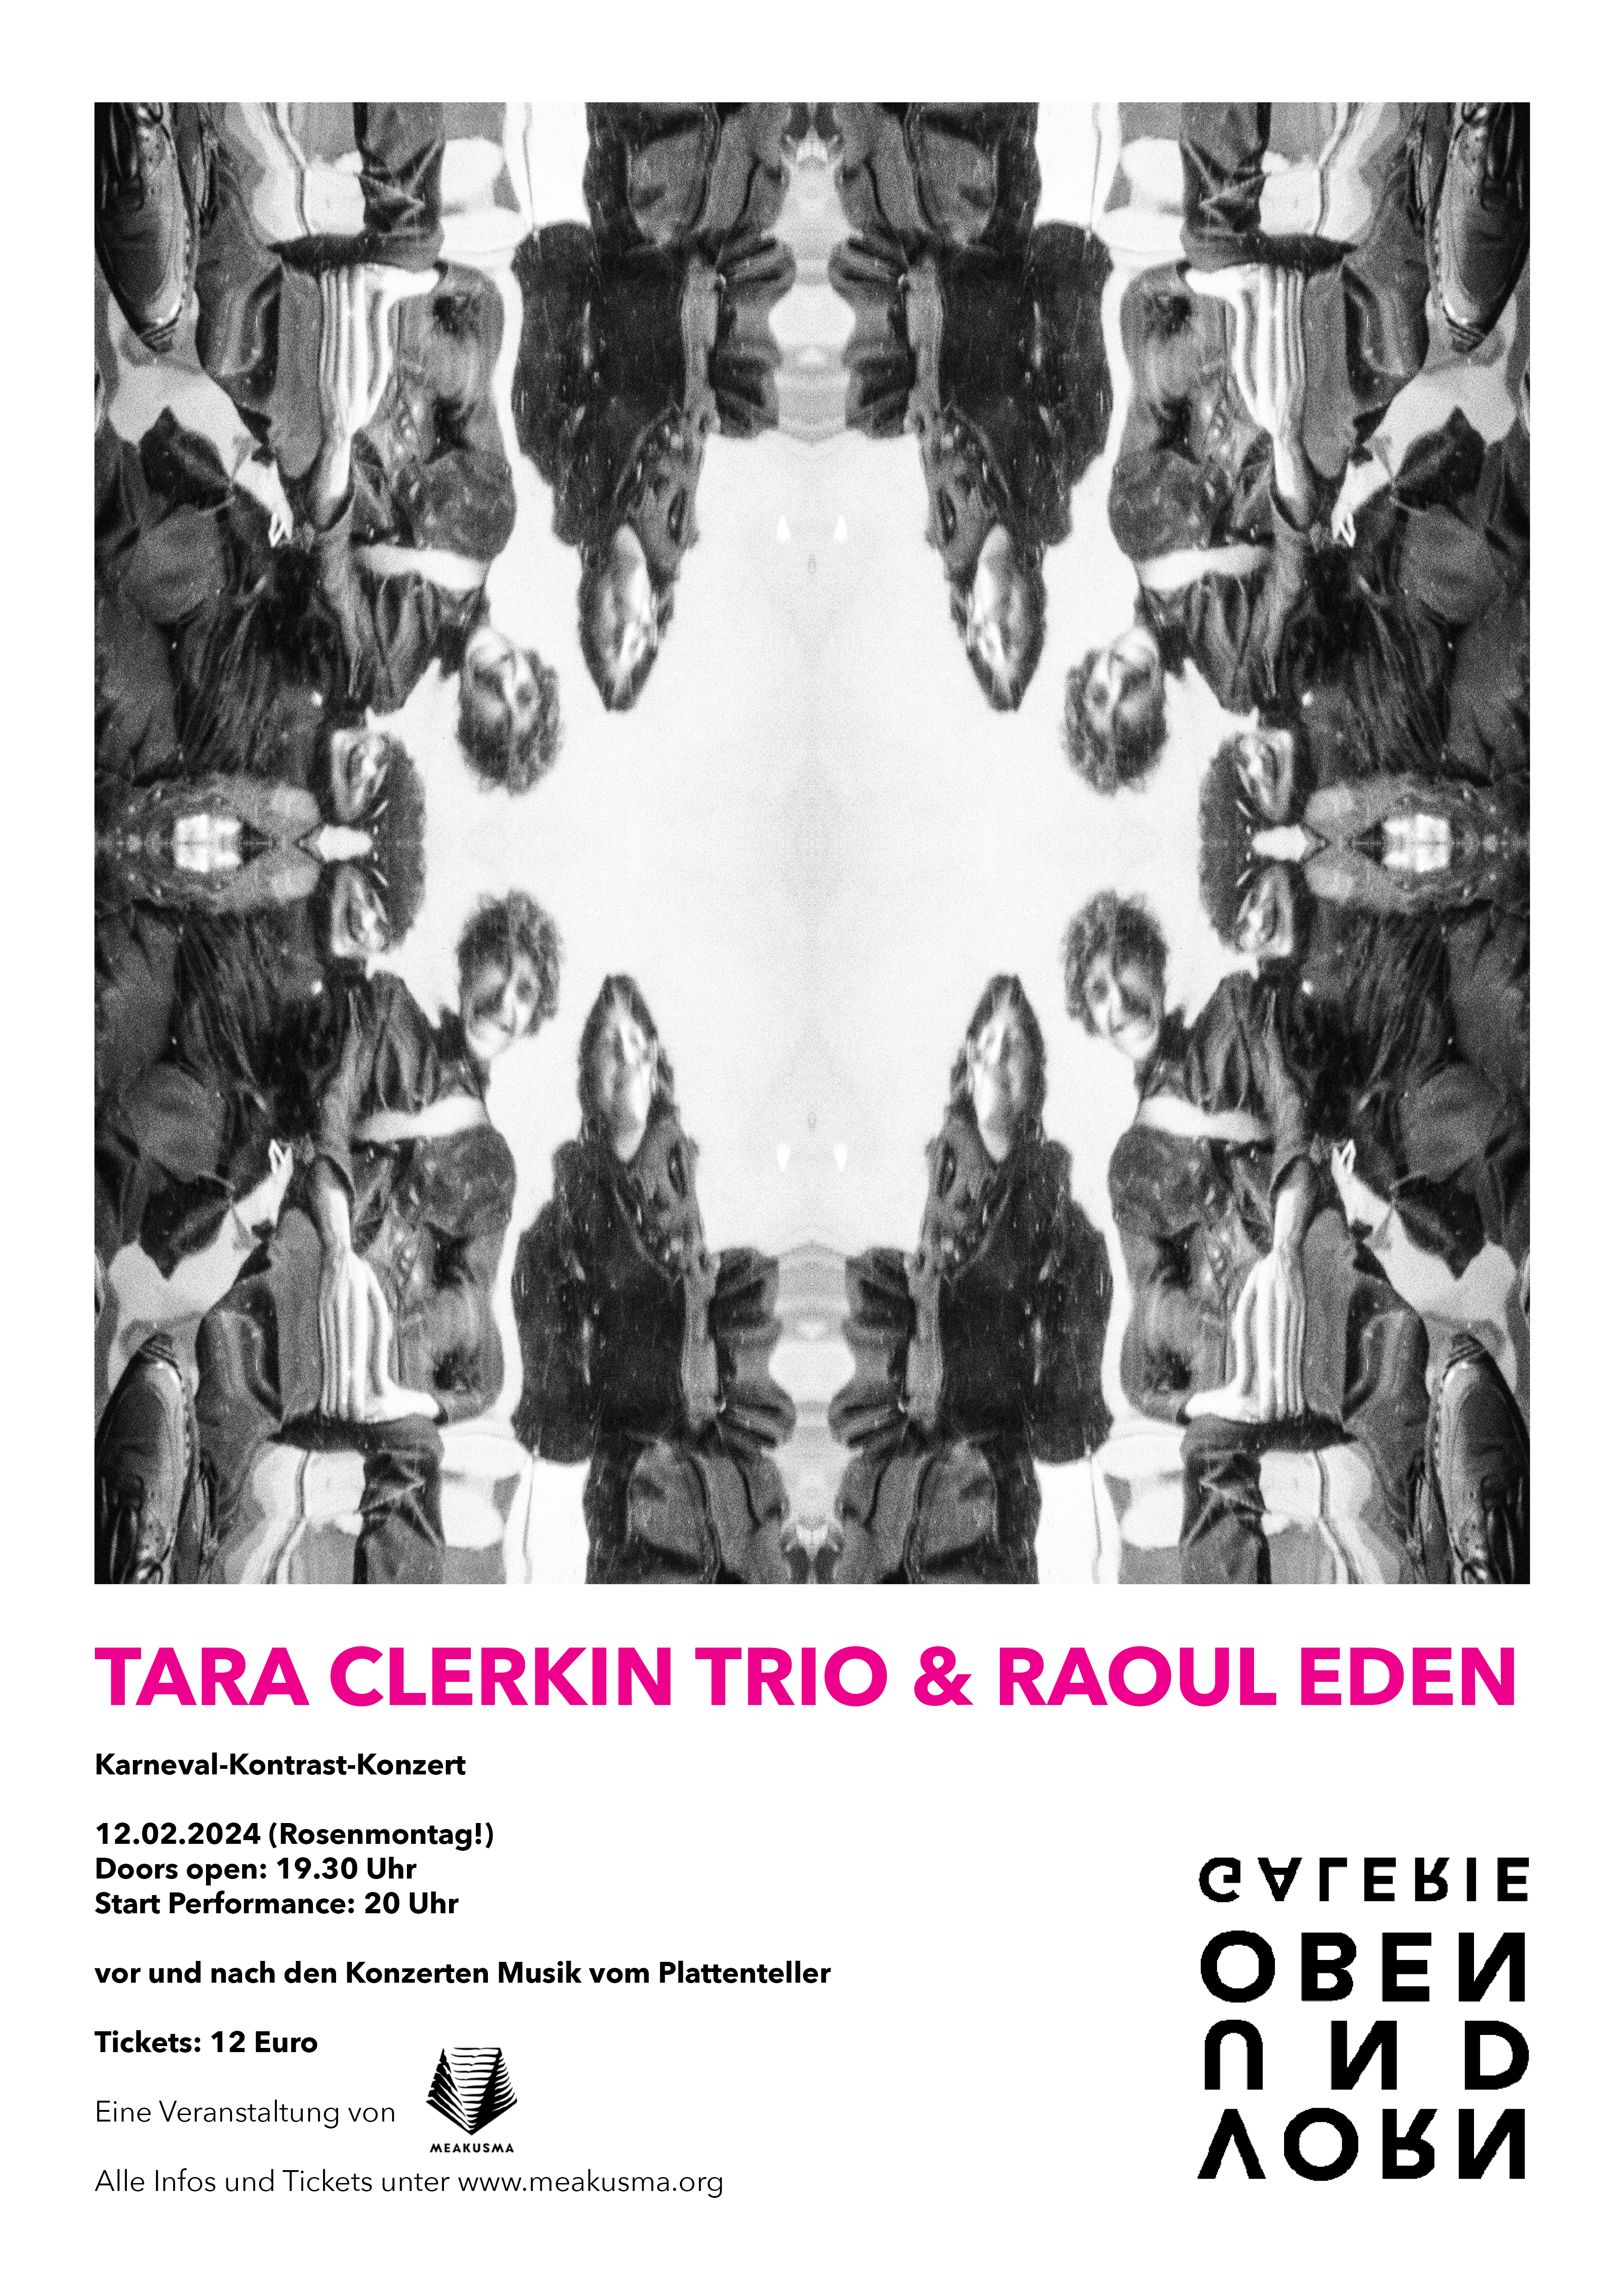 Tara Clerkin Trio & Raoul Eden